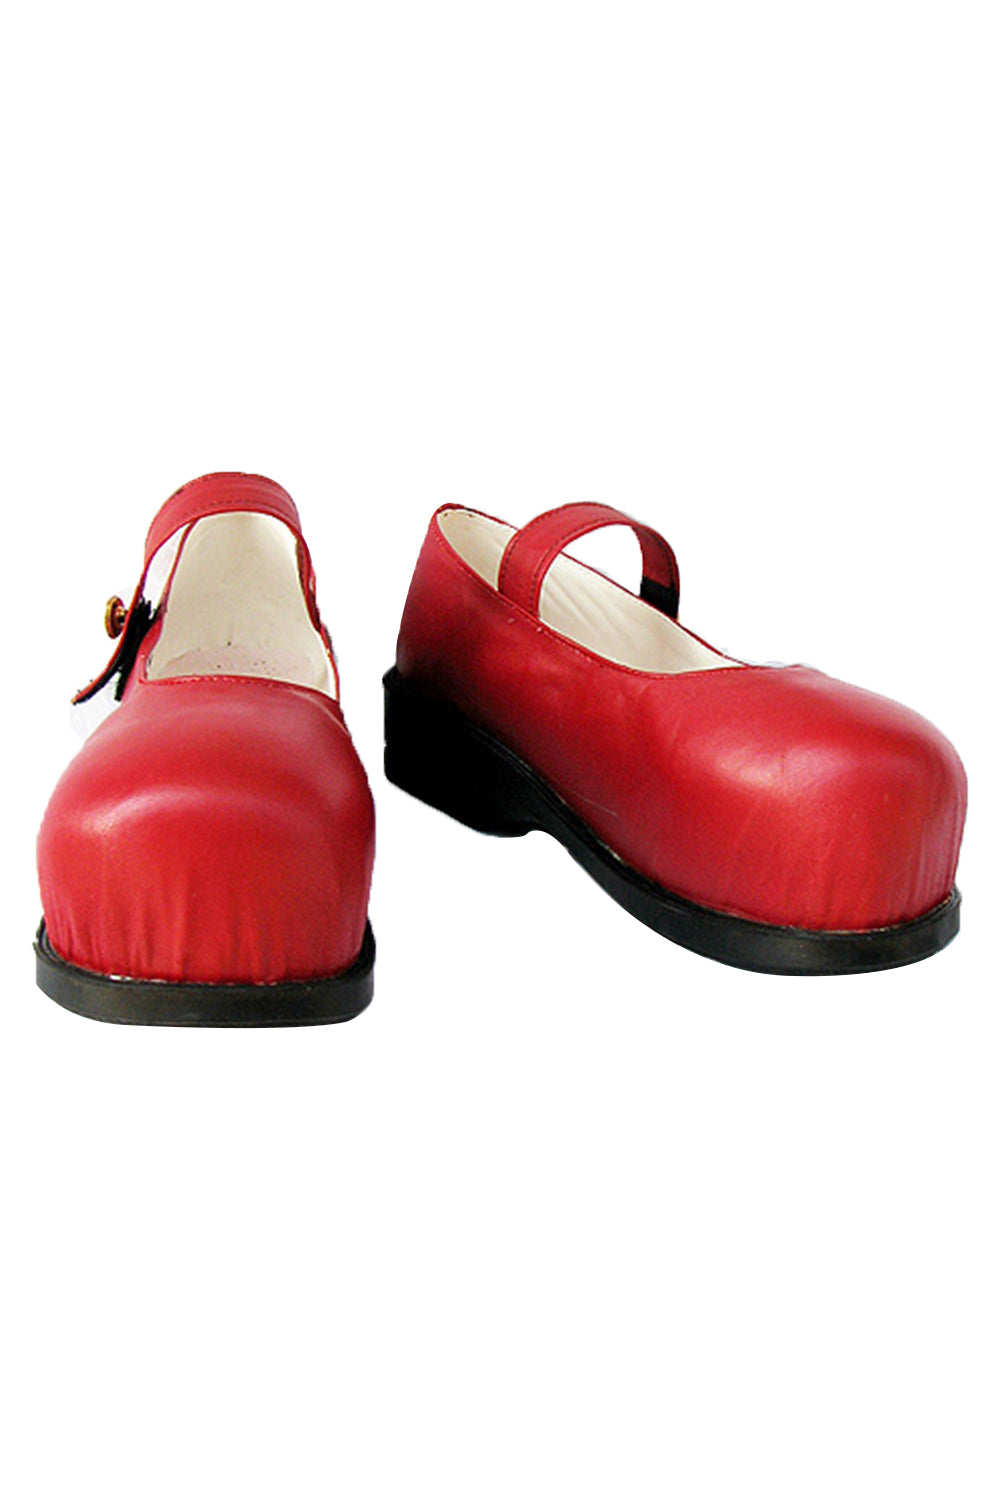 versterking Verdorren Dek de tafel The Adventures of Pinocchio Red Cosplay Shoes – TrendsinCosplay